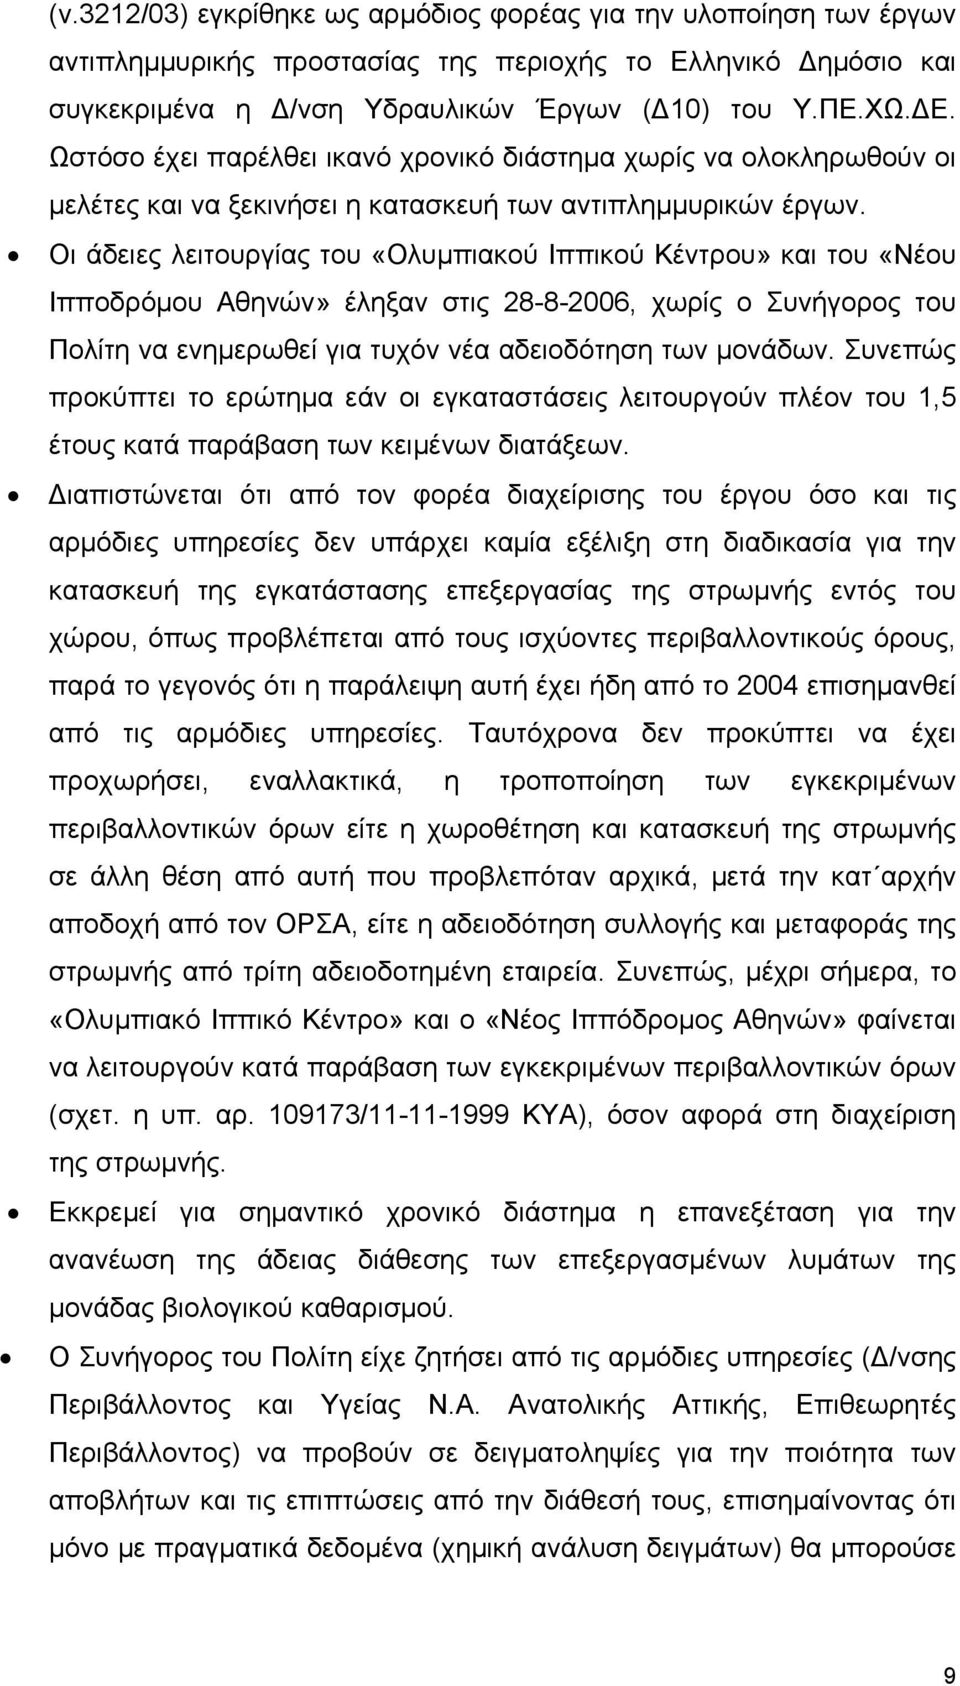 Οι άδειες λειτουργίας του «Ολυμπιακού Ιππικού Κέντρου» και του «Νέου Ιπποδρόμου Αθηνών» έληξαν στις 28-8-2006, χωρίς ο Συνήγορος του Πολίτη να ενημερωθεί για τυχόν νέα αδειοδότηση των μονάδων.